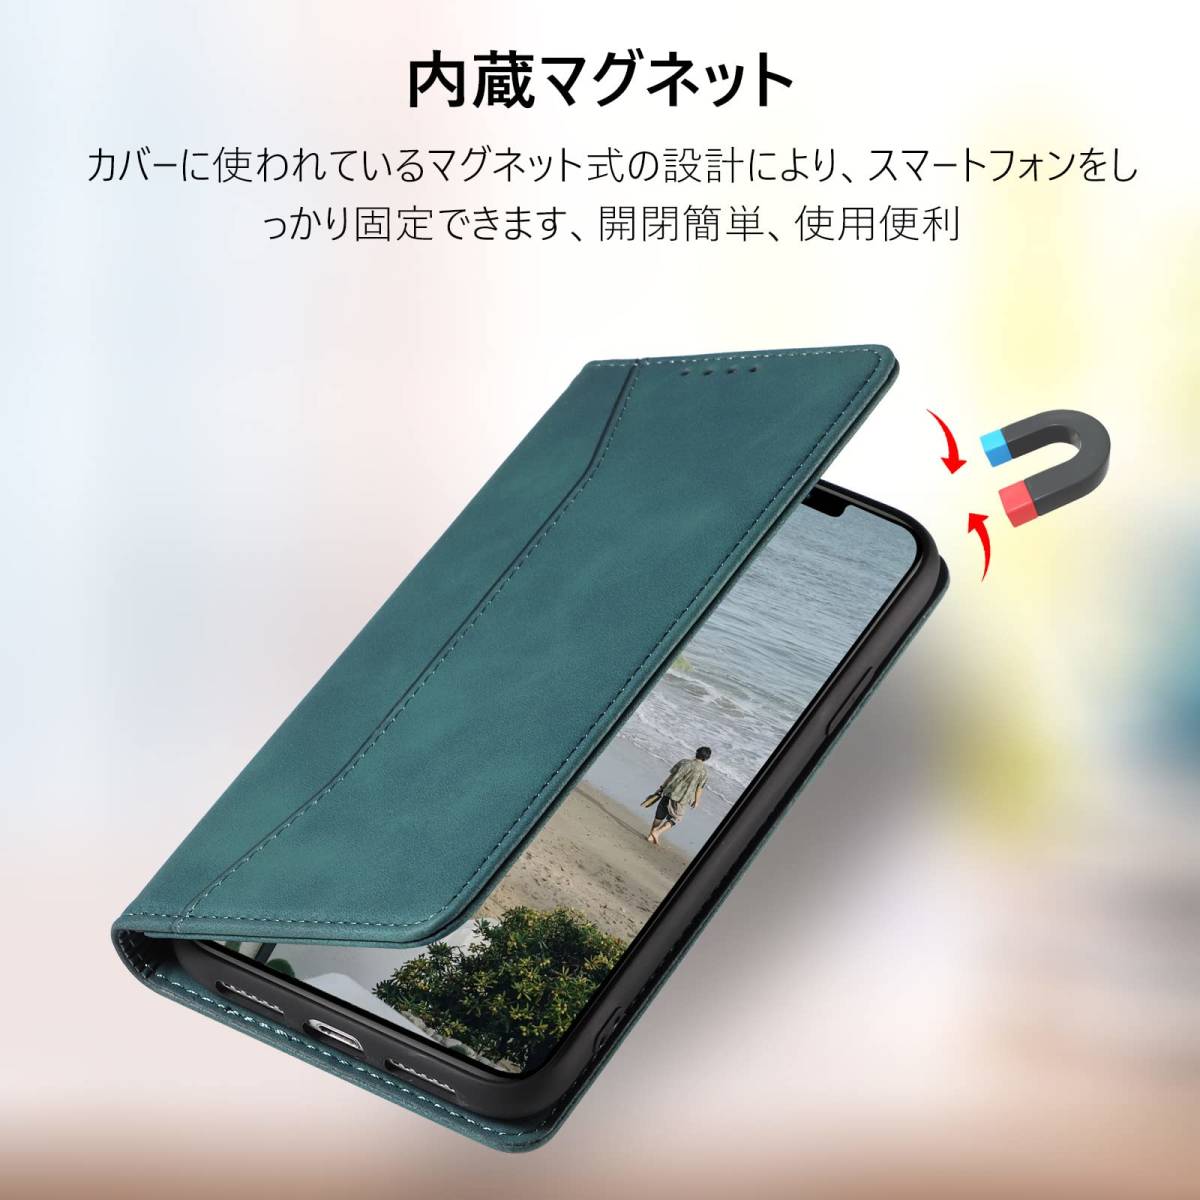 【特価セール】アイフォン10s 耐衝撃 iphone10s 全面保護 人気 内蔵マグネット x iphone 防塵 肌感レザー 肌